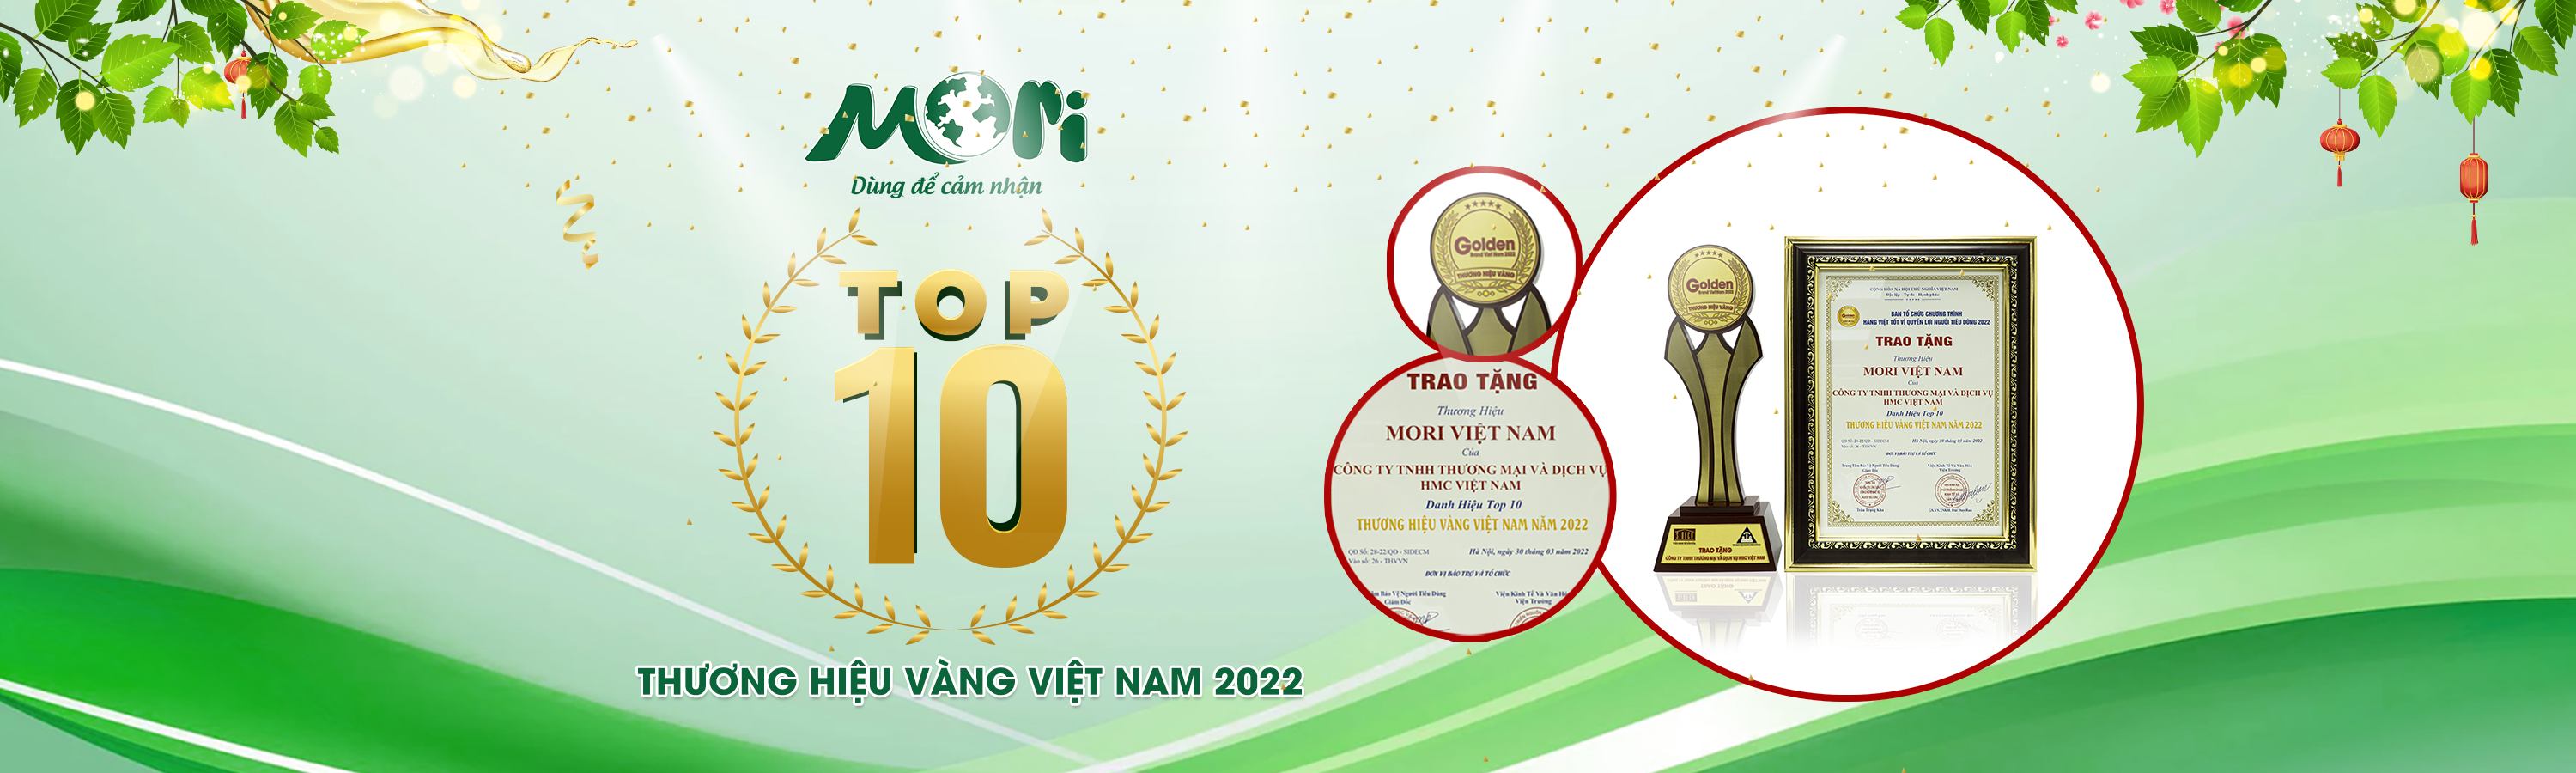 Mori vinh dự nhận giải thưởng Top 10 thương hiệu vàng Việt Nam 2022